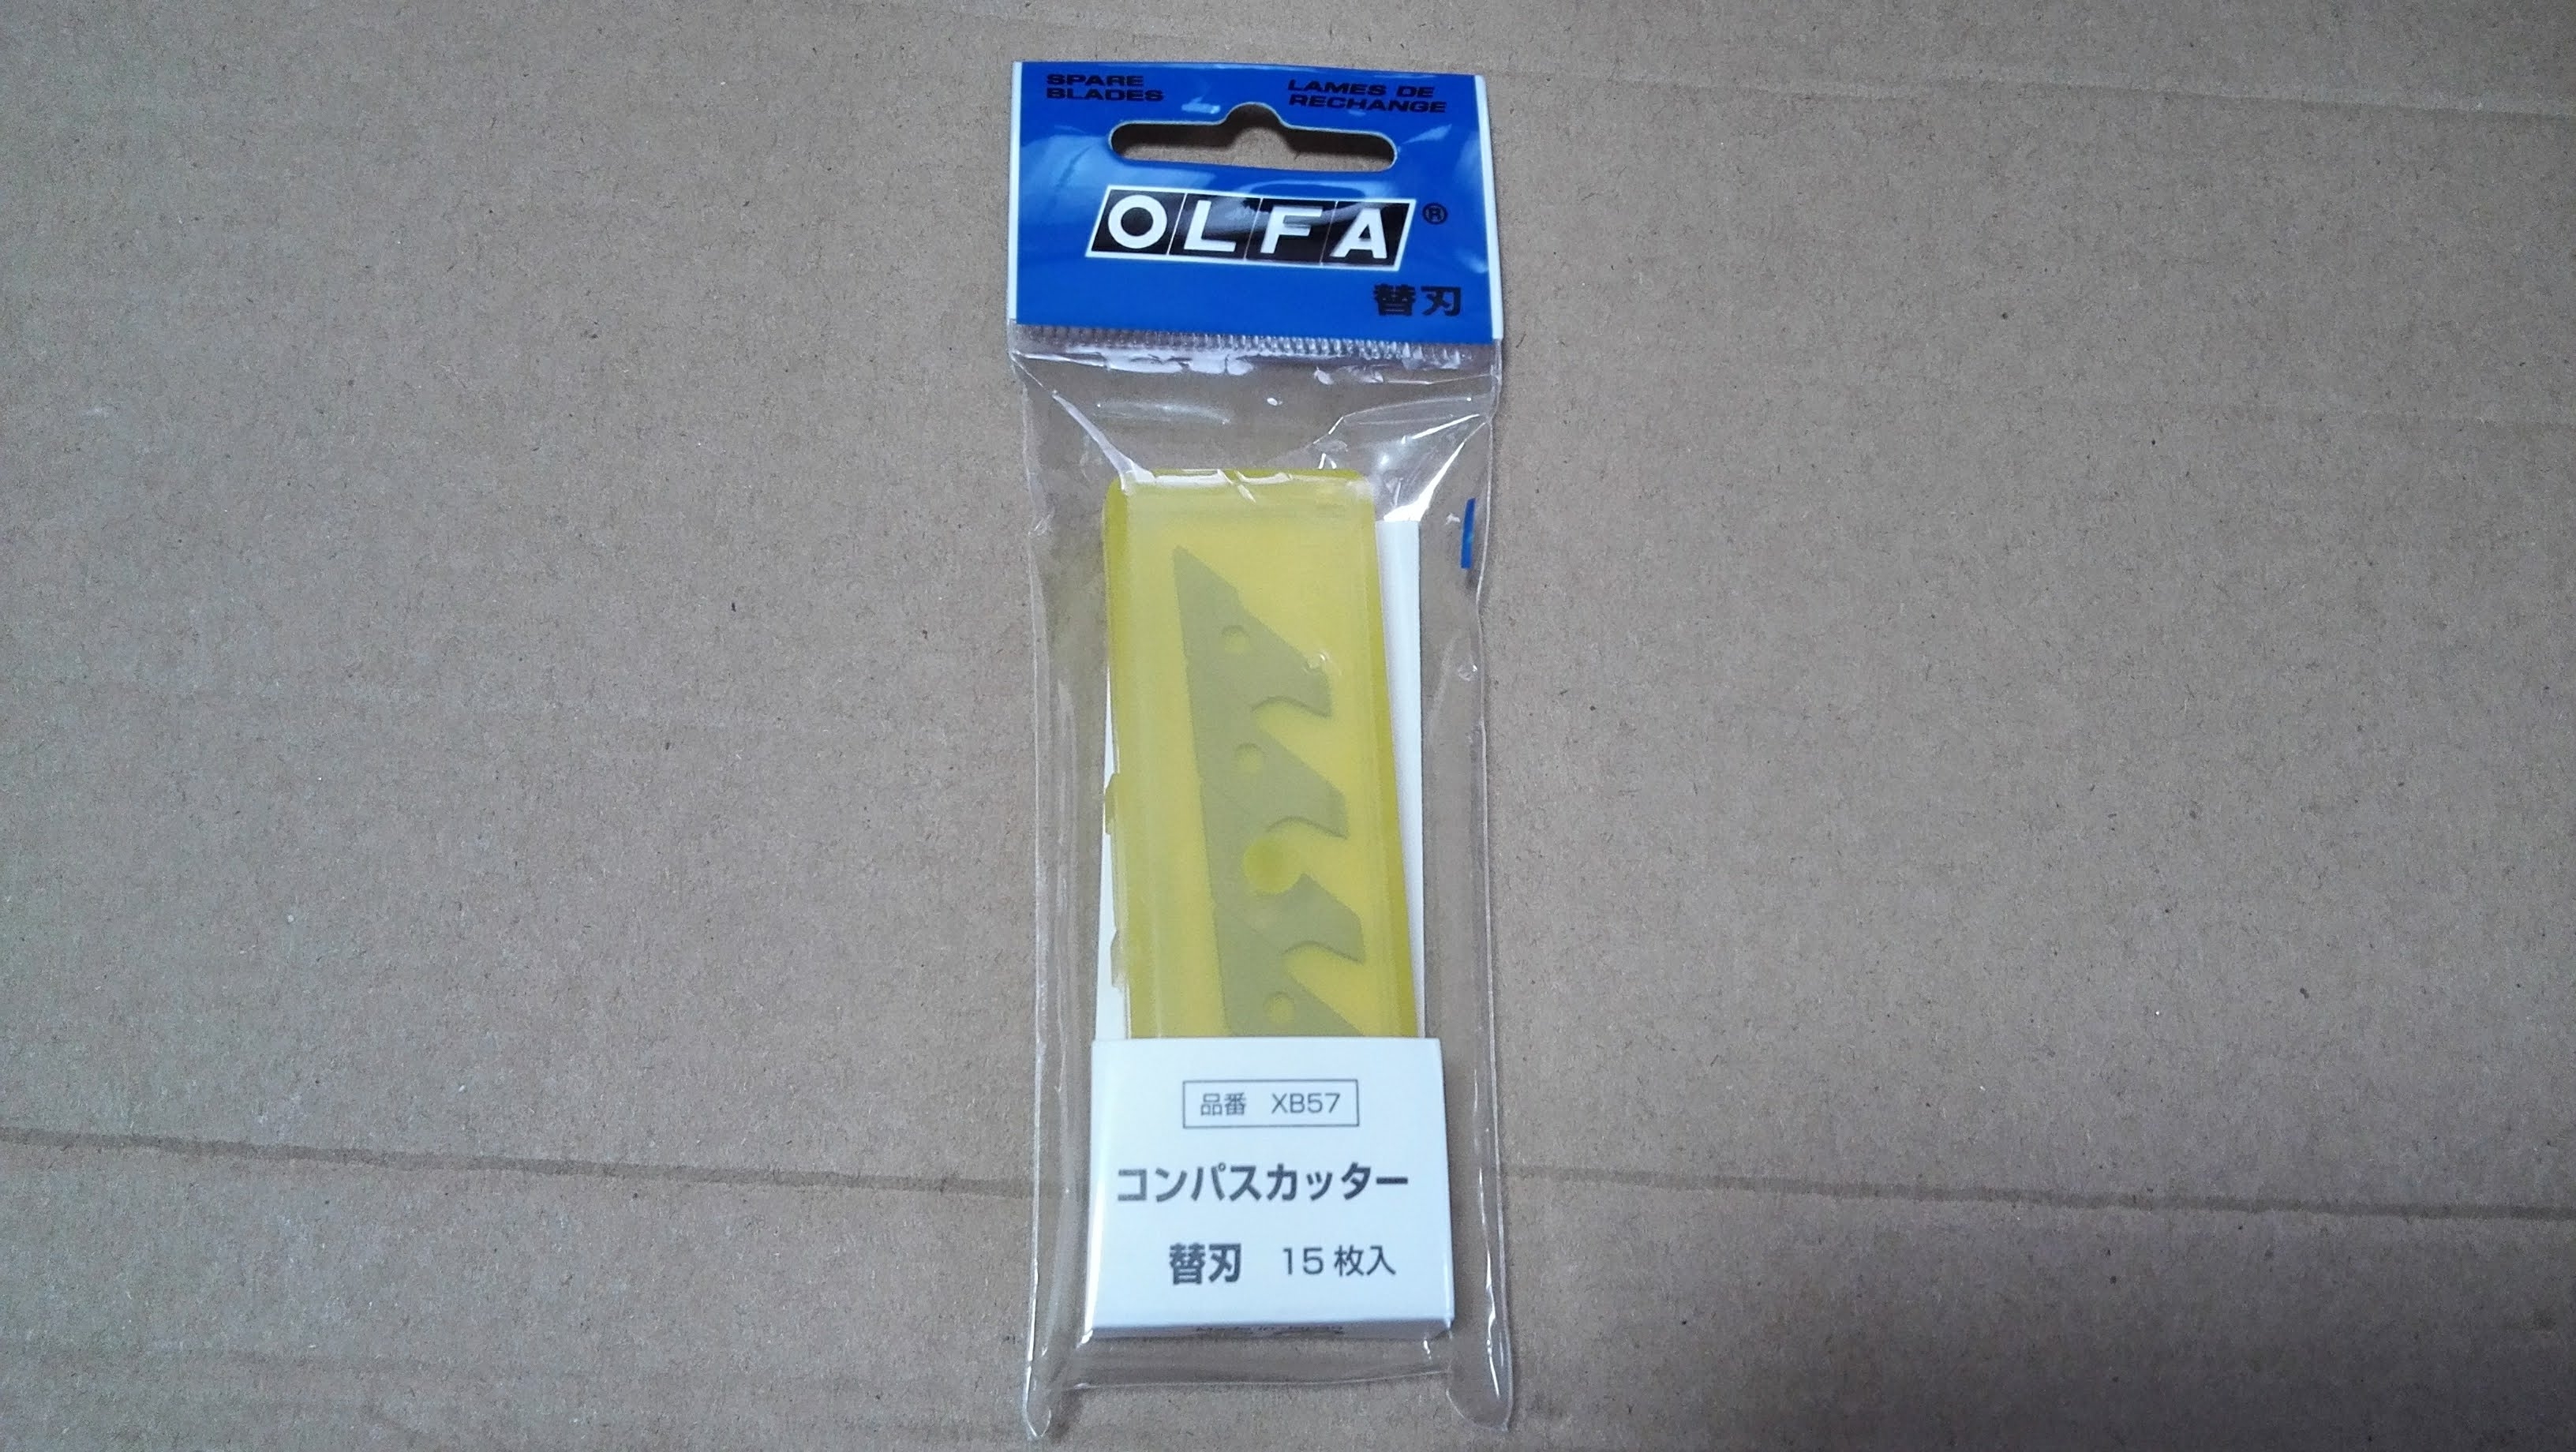 安い購入 OLFA オルファ XB57 コンパスカッター替刃 15枚入 メール便